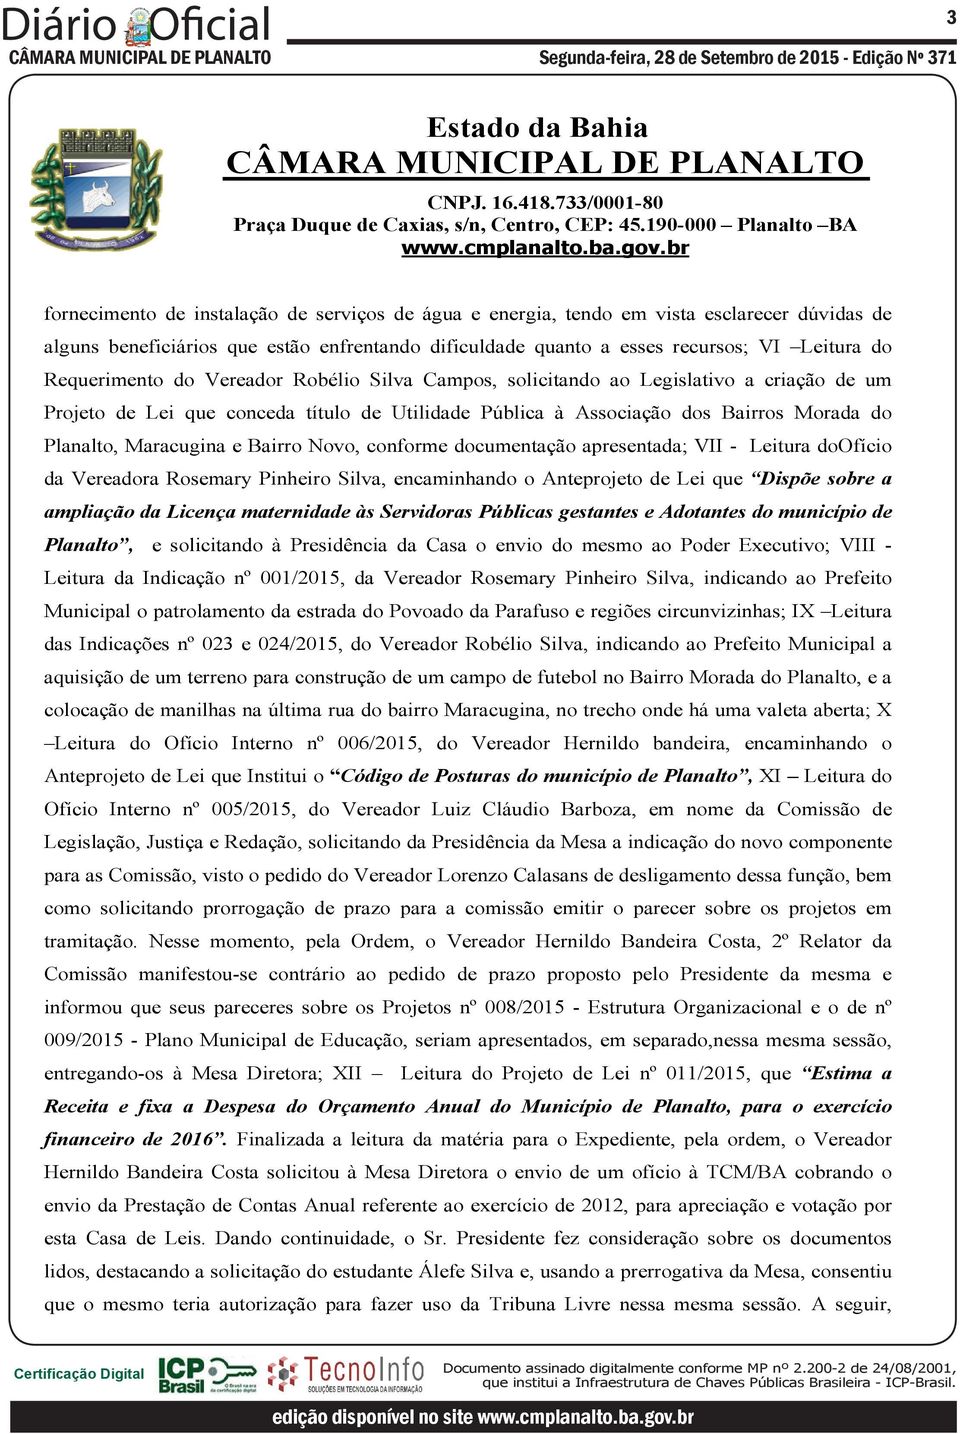 Requerimento do Vereador Robélio Silva Campos, solicitando ao Legislativo a criação de um Projeto de Lei que conceda título de Utilidade Pública à Associação dos Bairros Morada do Planalto,